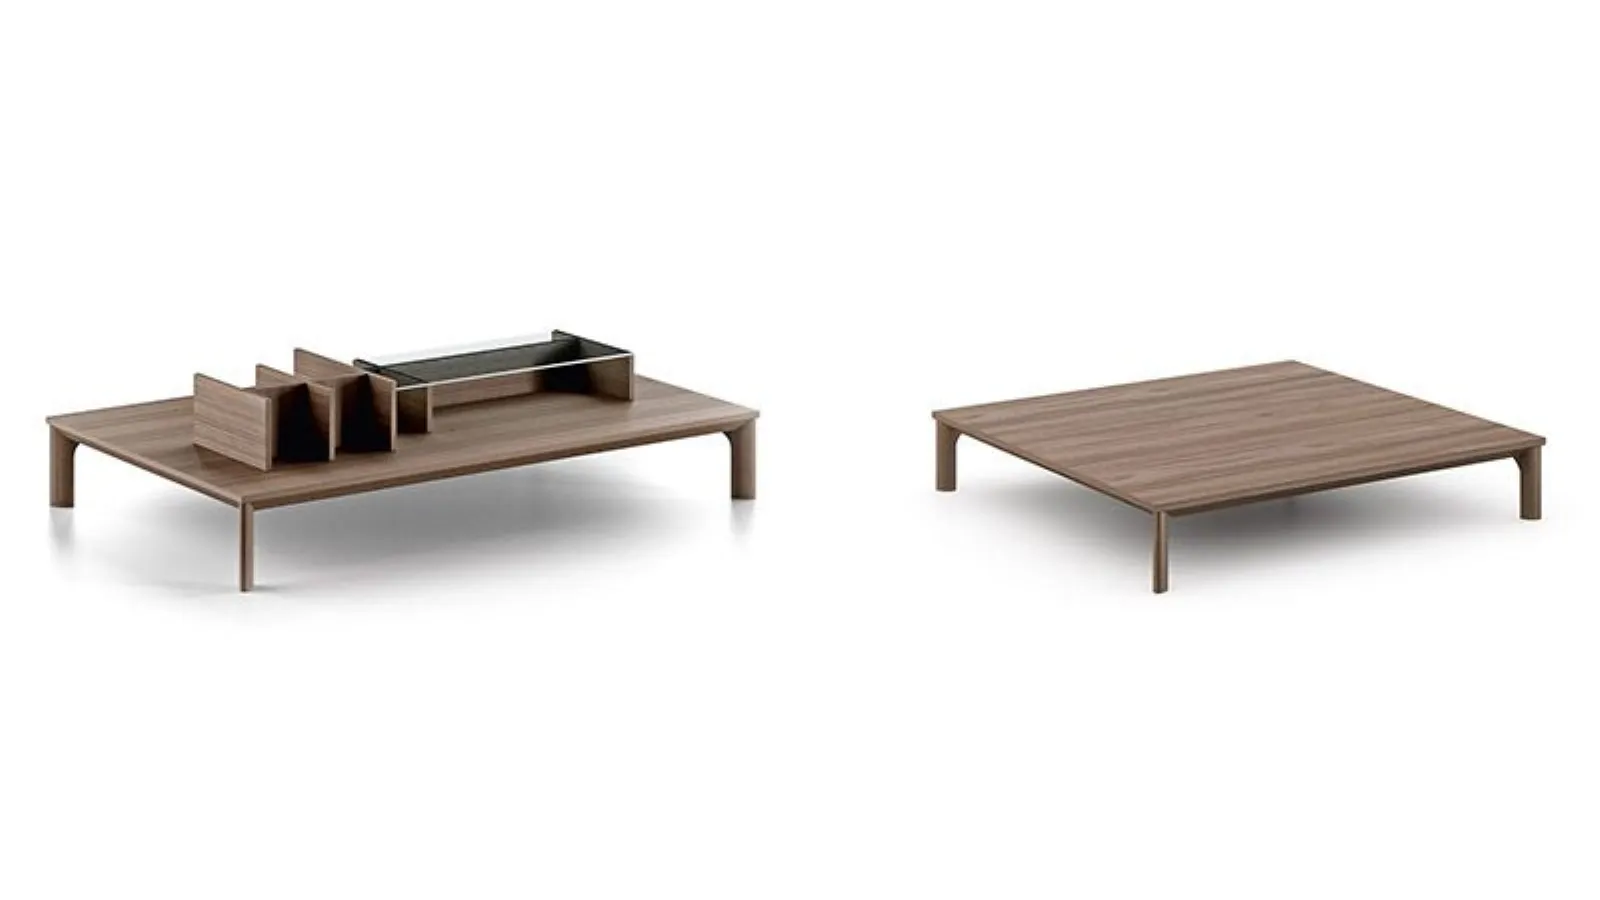 Tavolino completamente realizzato in legno